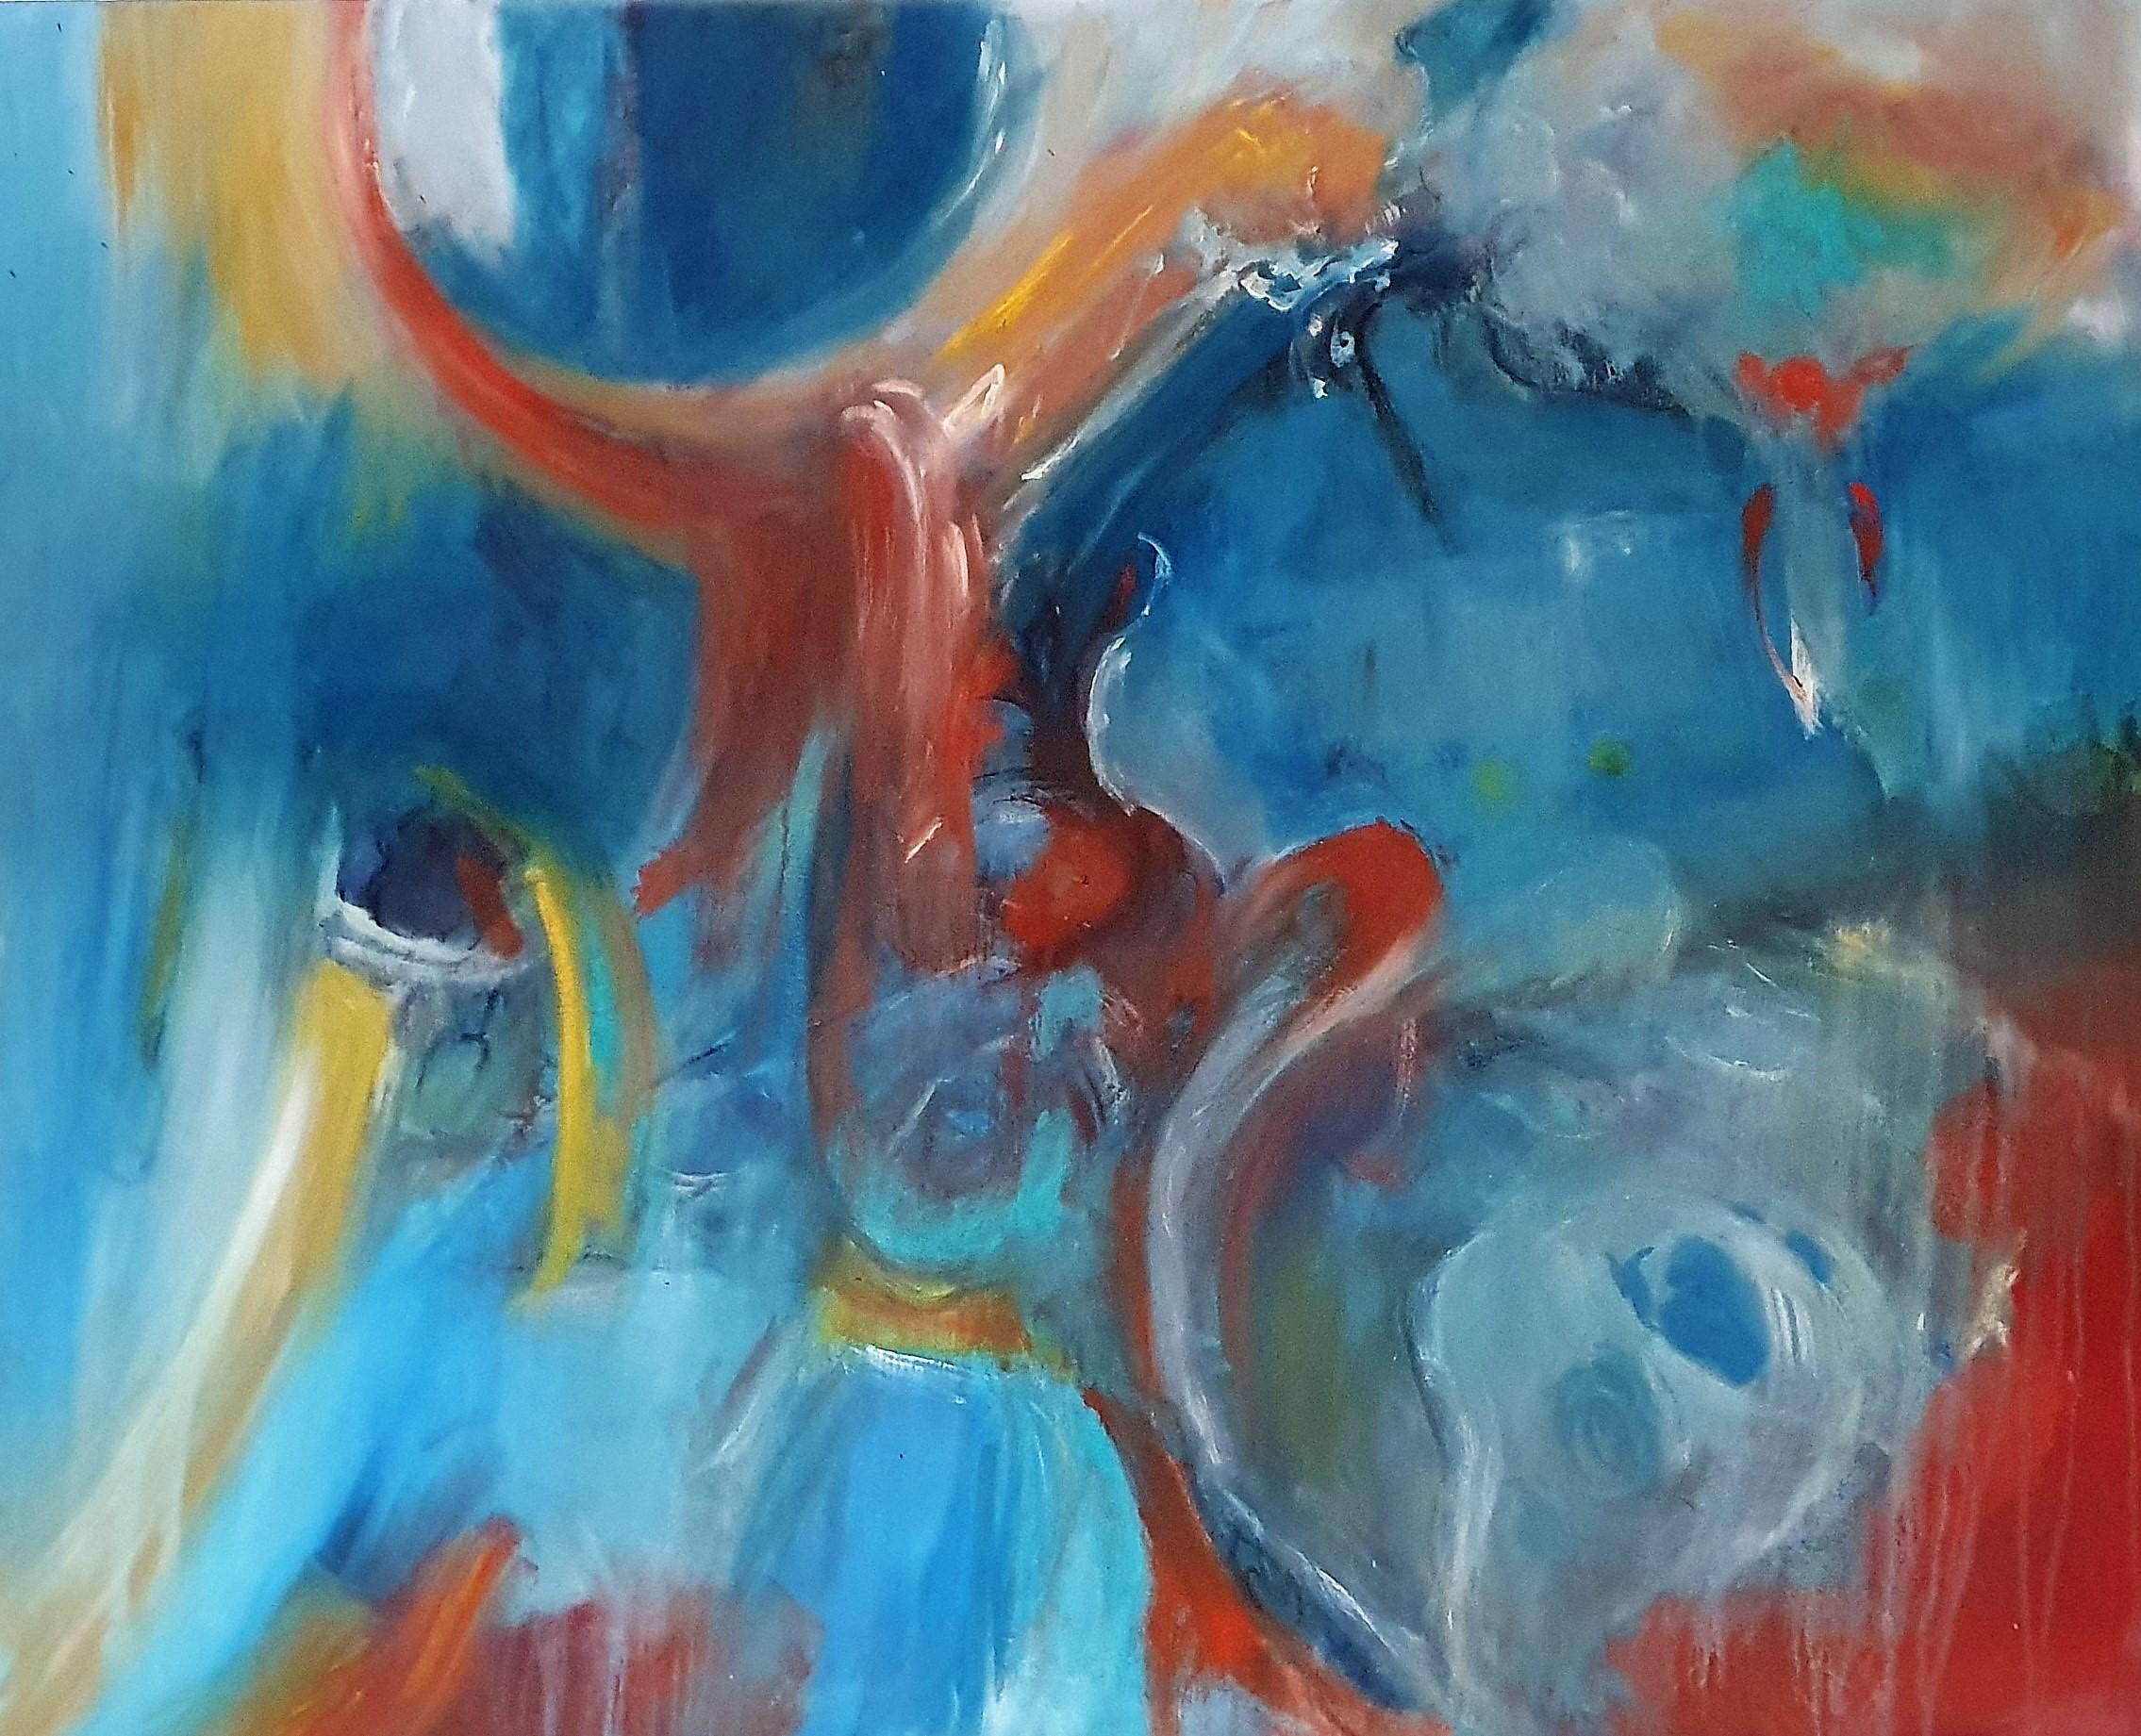 Abstract Painting Kate Bell - ""Et du labyrinthe de la lumière, dérouler la magie"". Peinture à l'huile abstraite contemporaine